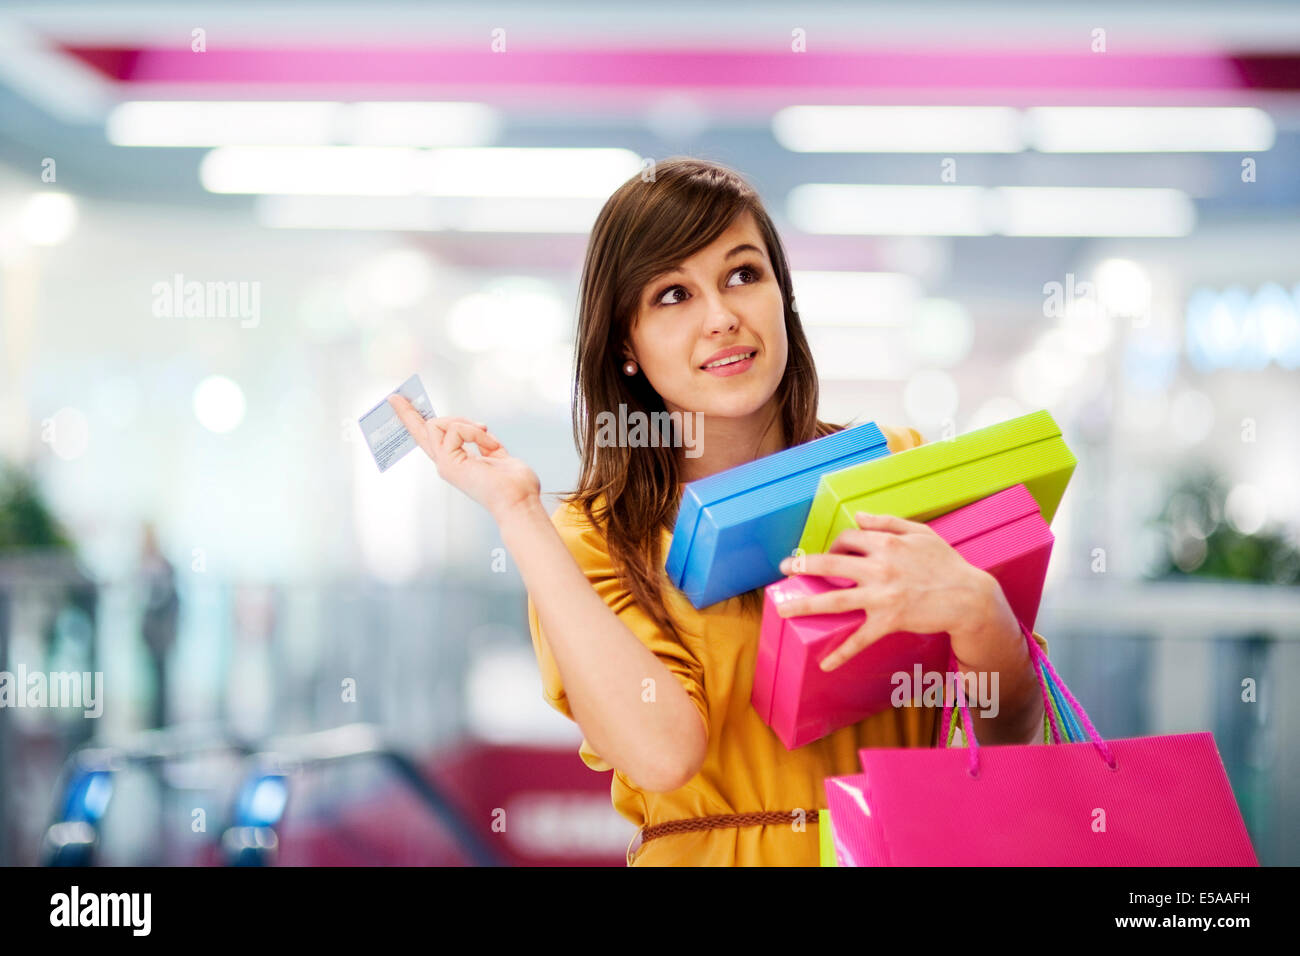 Магазин кредиток. Люди с покупками. Девушка с покупками. Девушка с кредиткой. Женщина с кредитной картой.